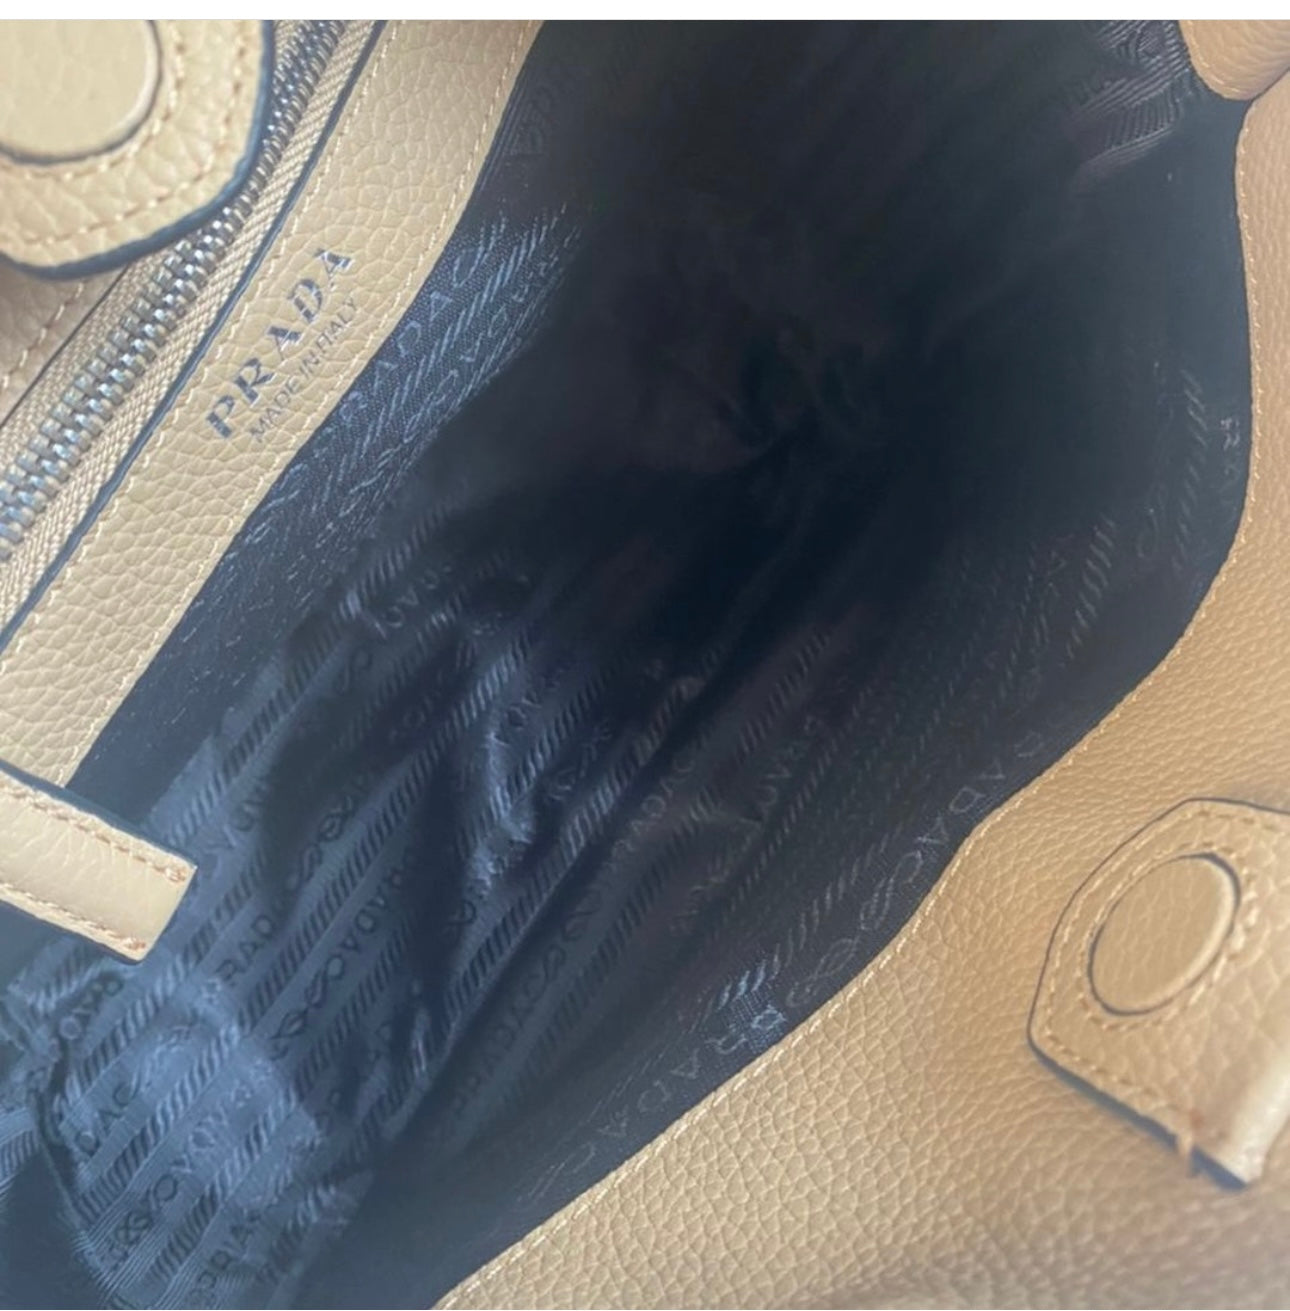 Beige Leather Mini Shoulder Bag